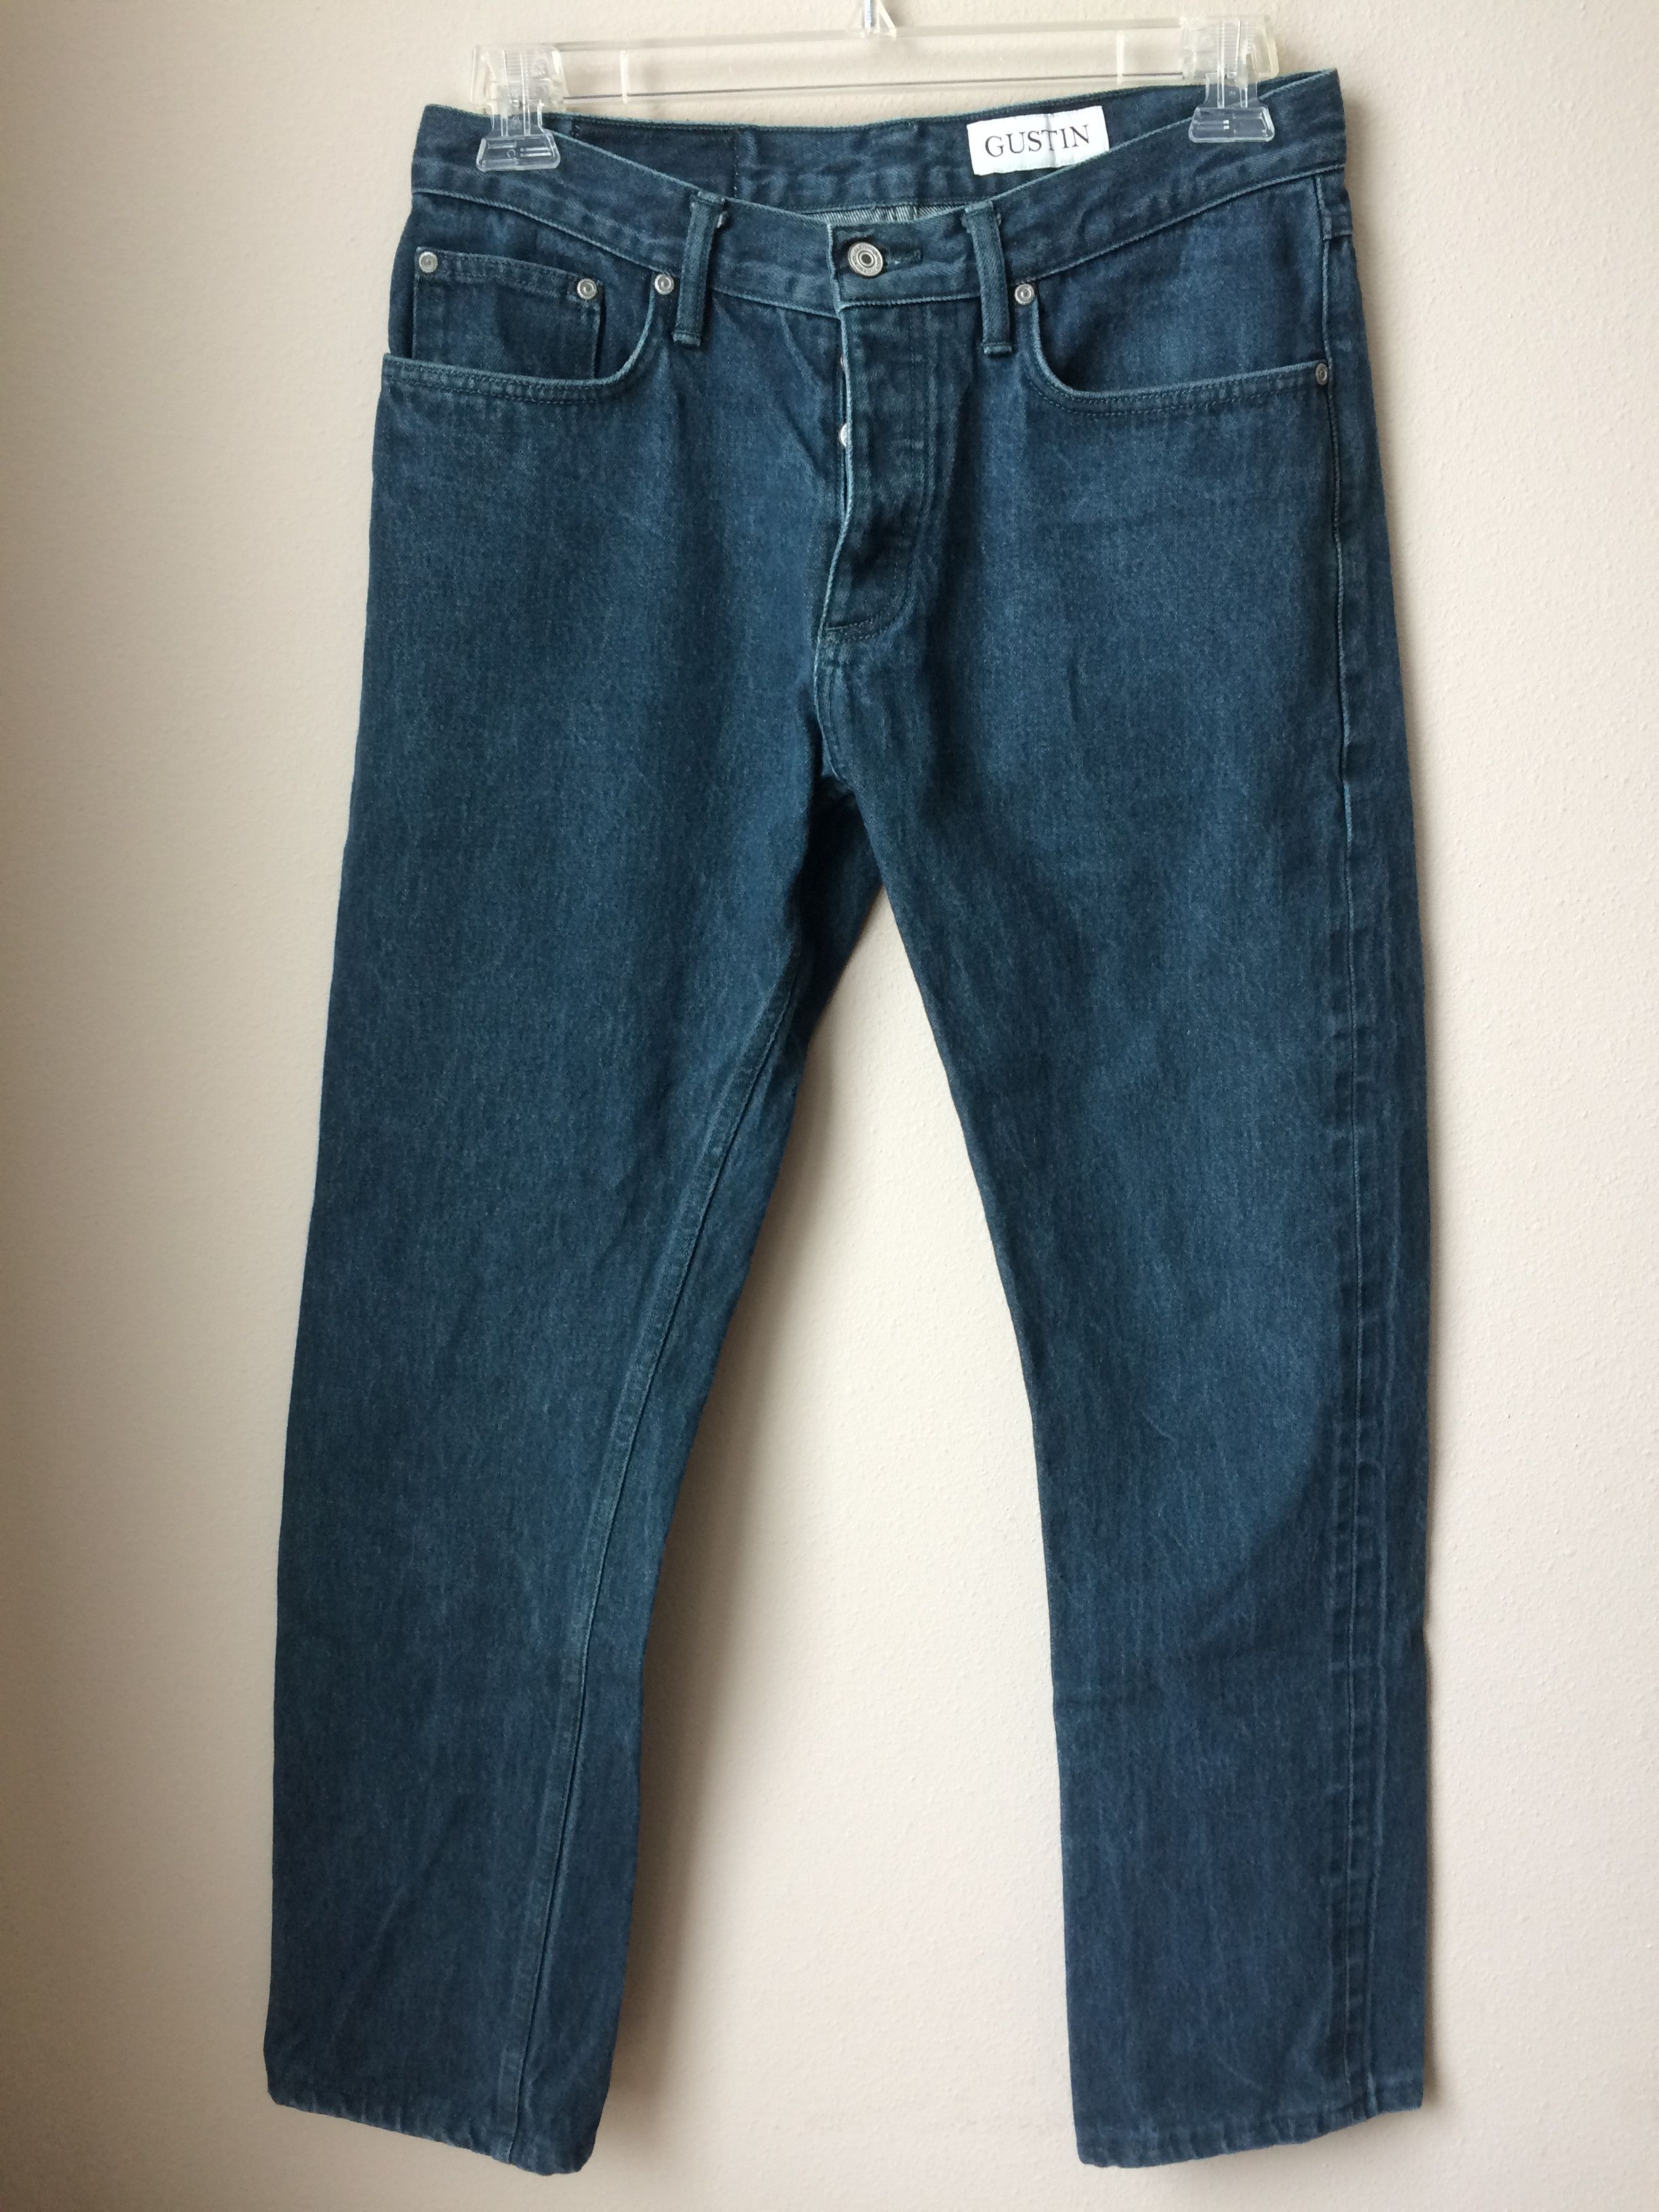 Gustin Gustin 200 Japan Viridian Selvedge Jeans | Grailed